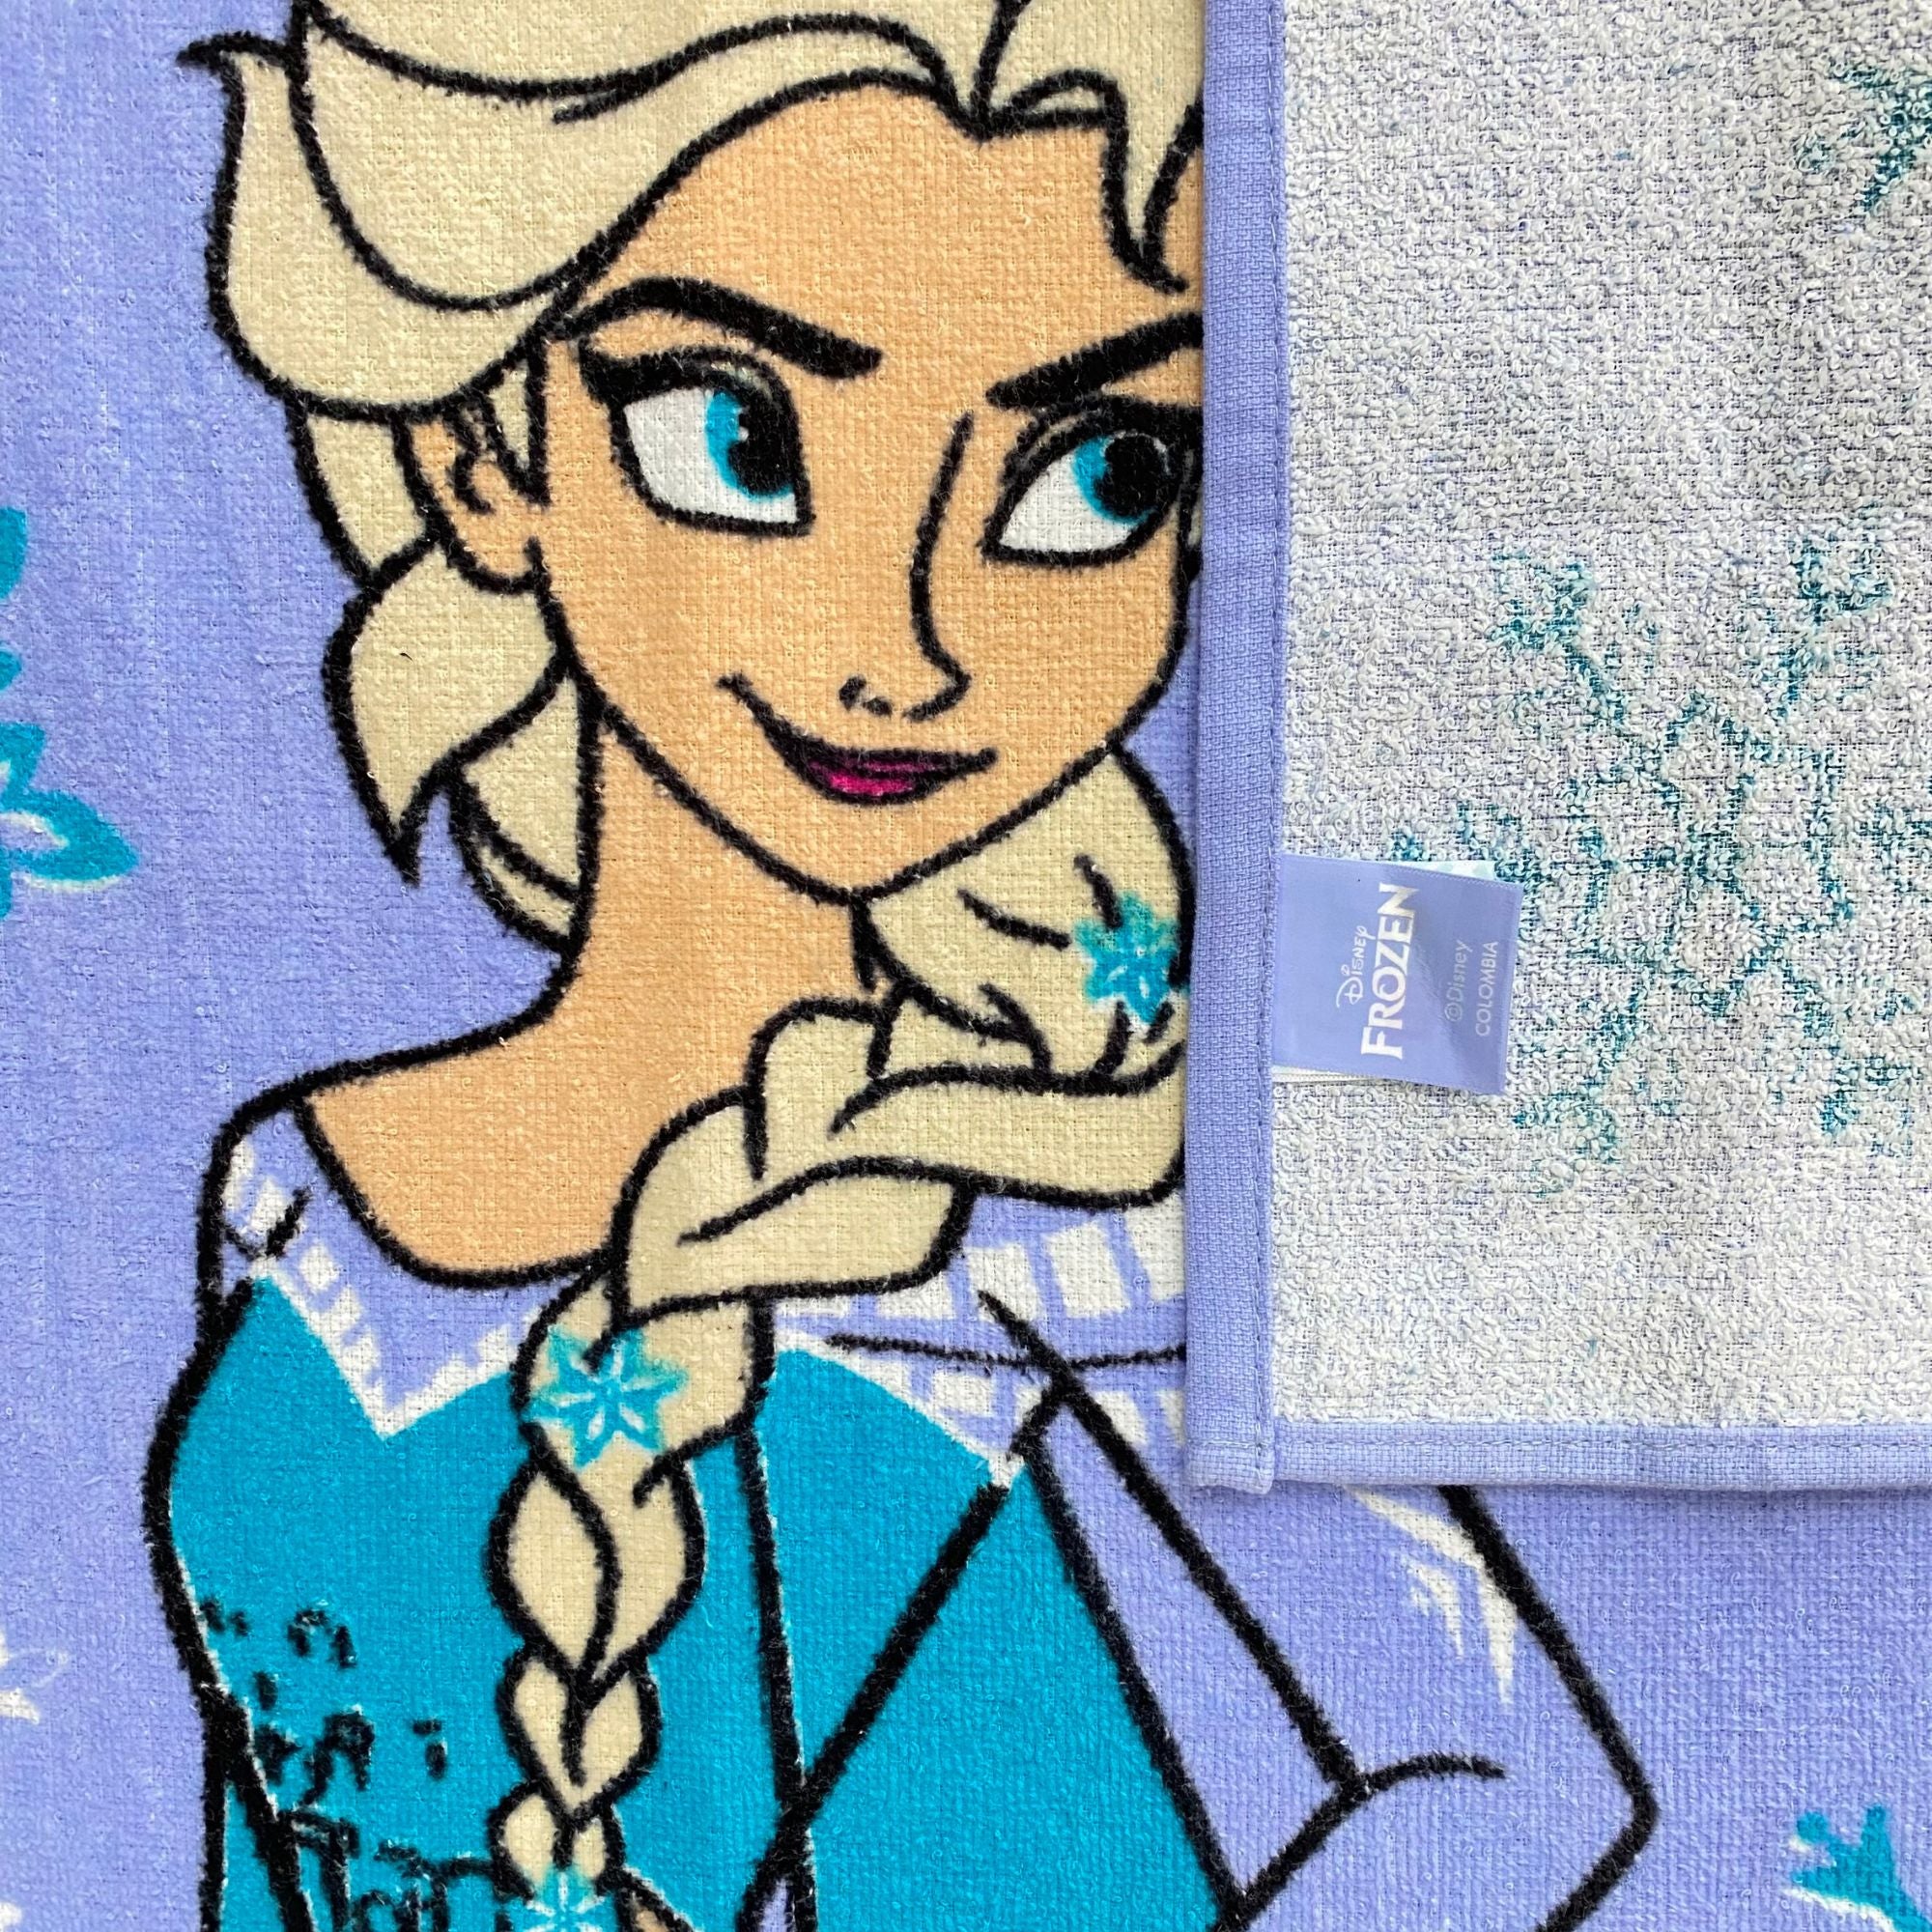 Toalla de Frozen licencia oficial Disney de 60 x 1.20 cms